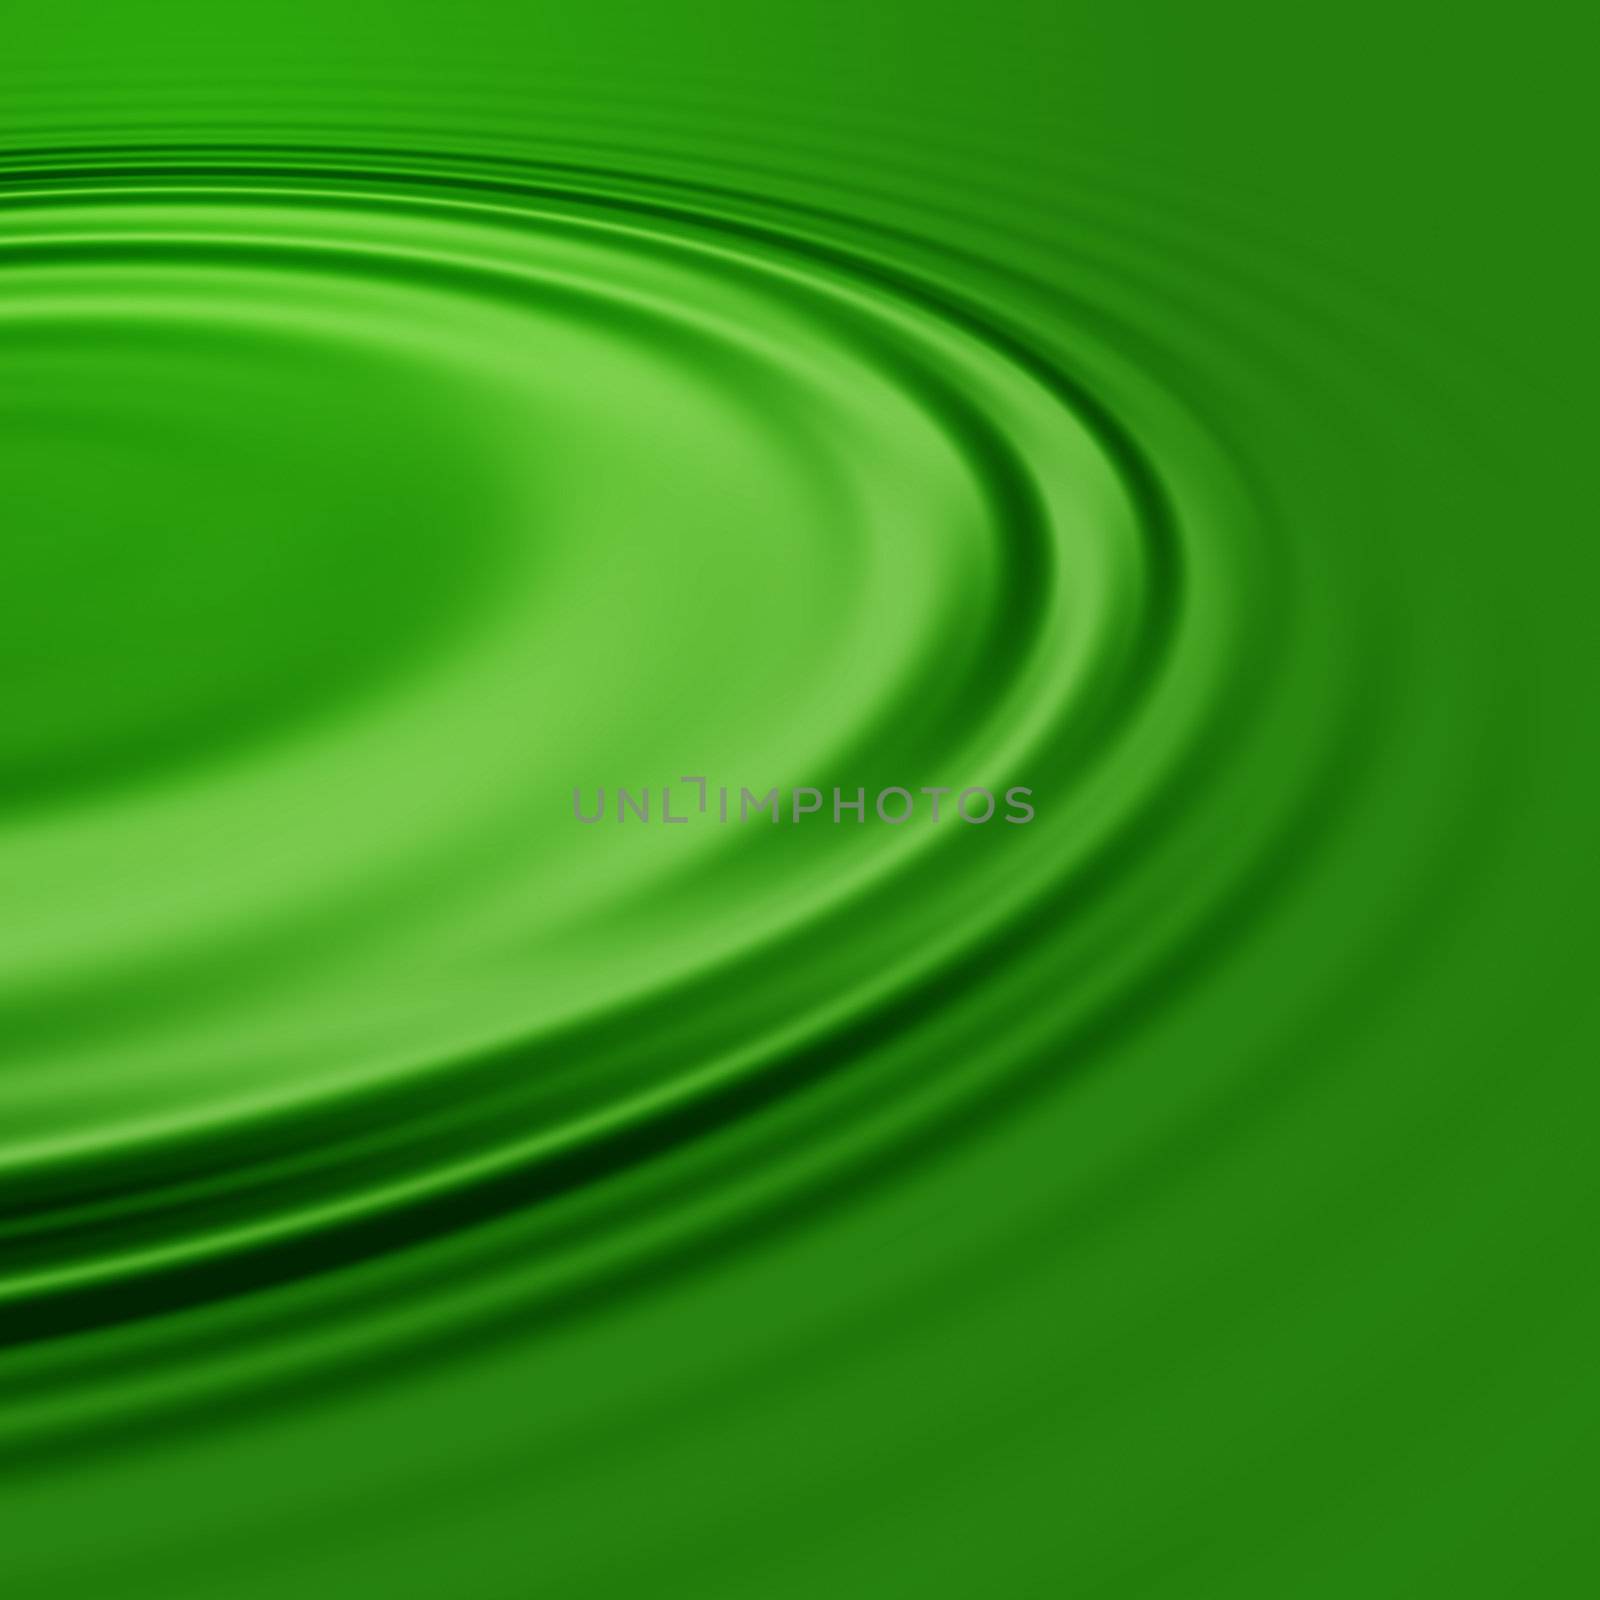 A pool of green liquid.